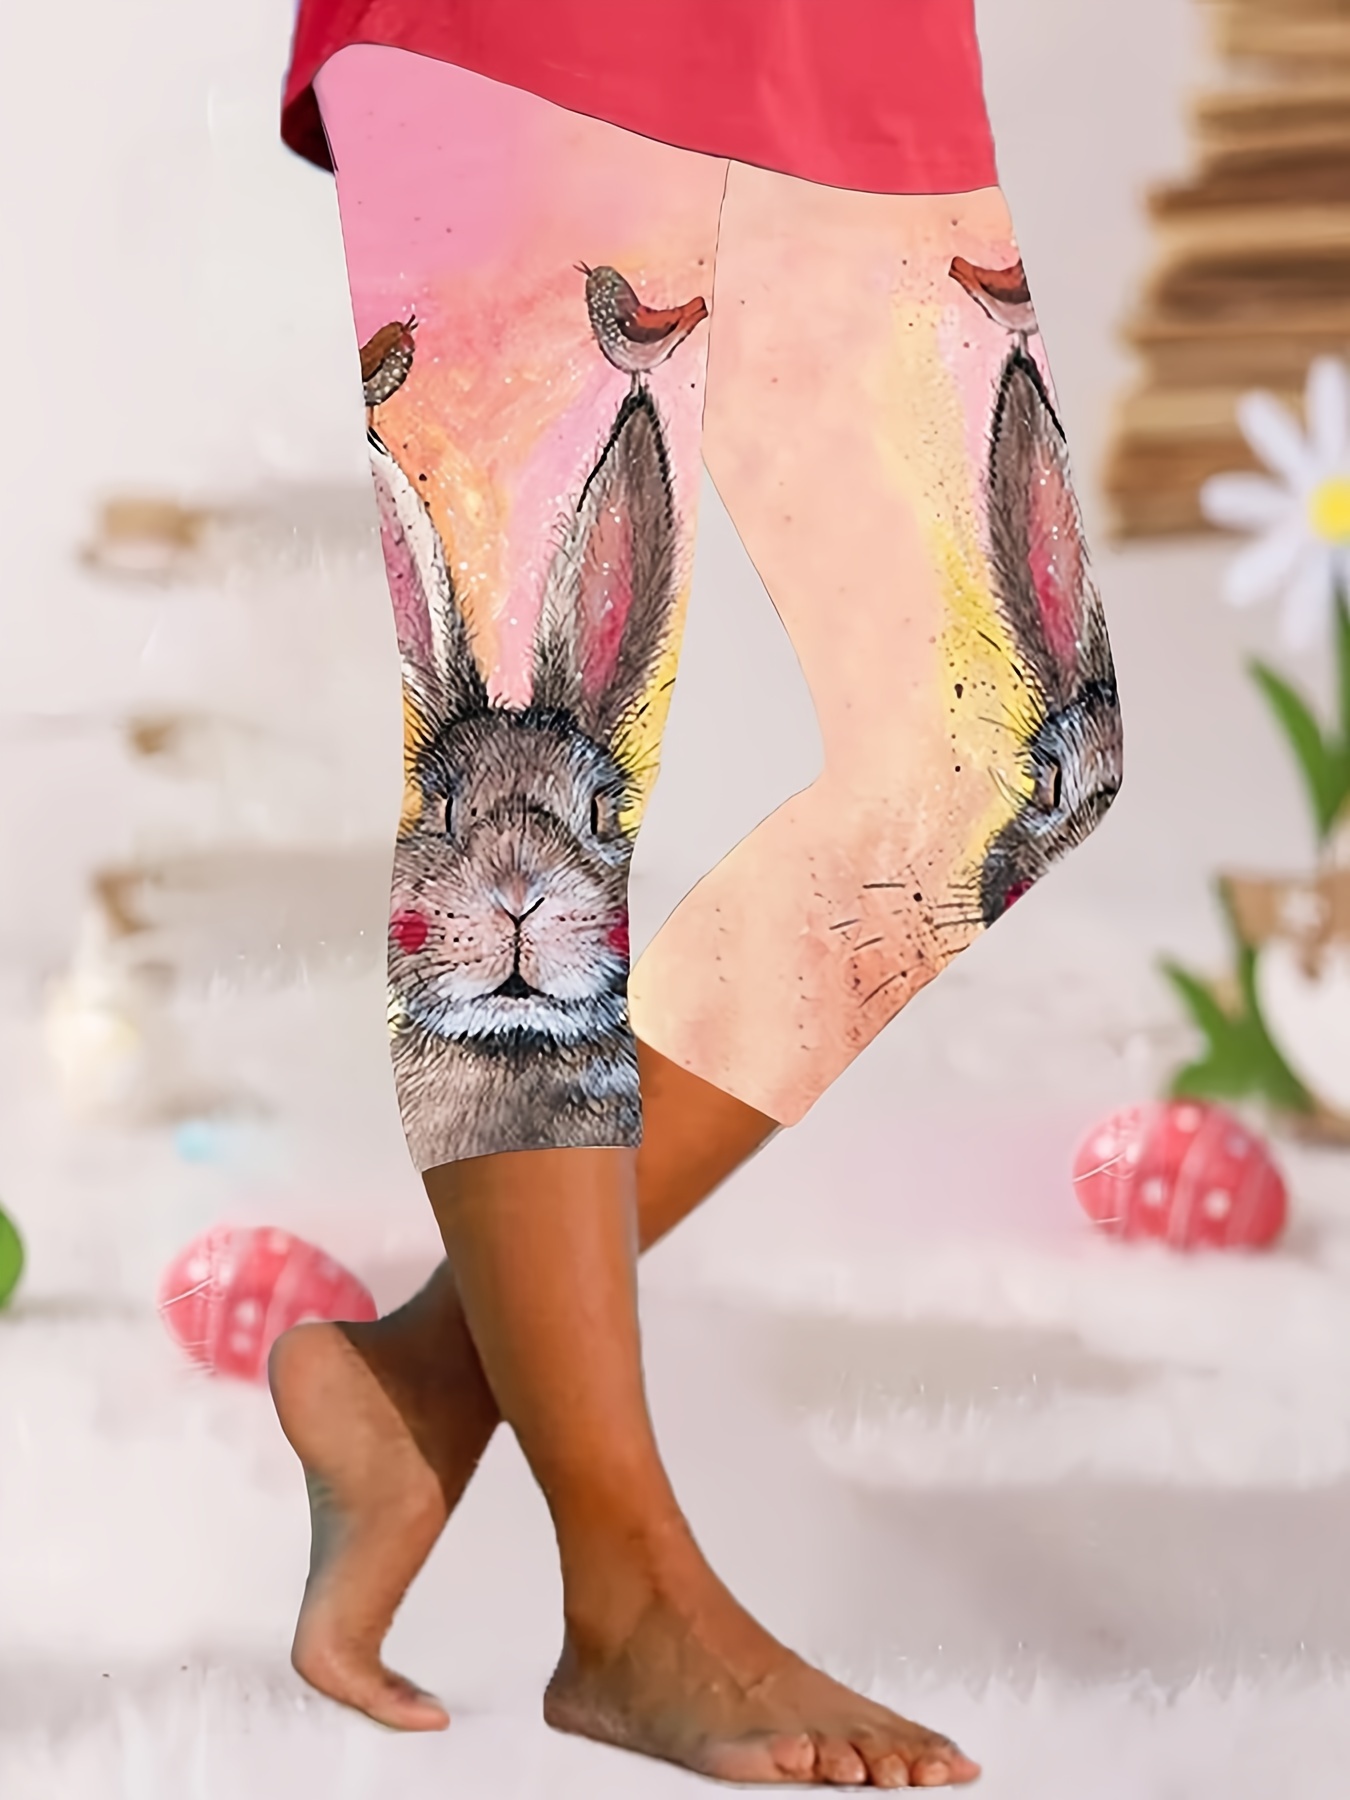 Easter Bunny Leggings Pink and White Bunny Leggings Women's Cut & Sew  Casual Leggings -  Denmark